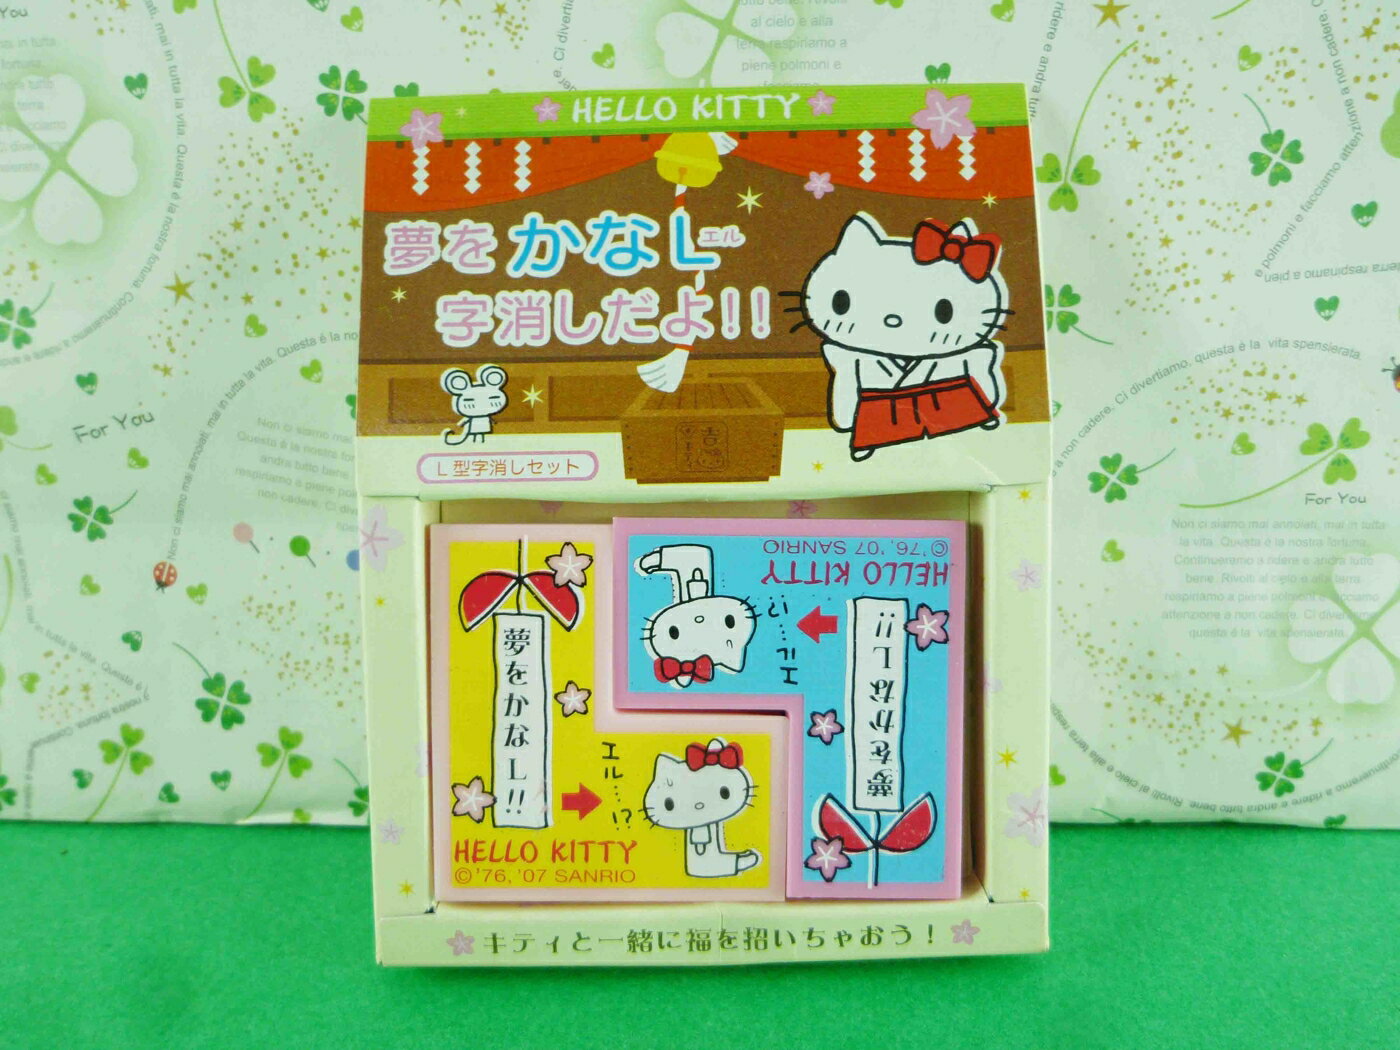 【震撼精品百貨】Hello Kitty 凱蒂貓 橡皮擦-祈福 震撼日式精品百貨